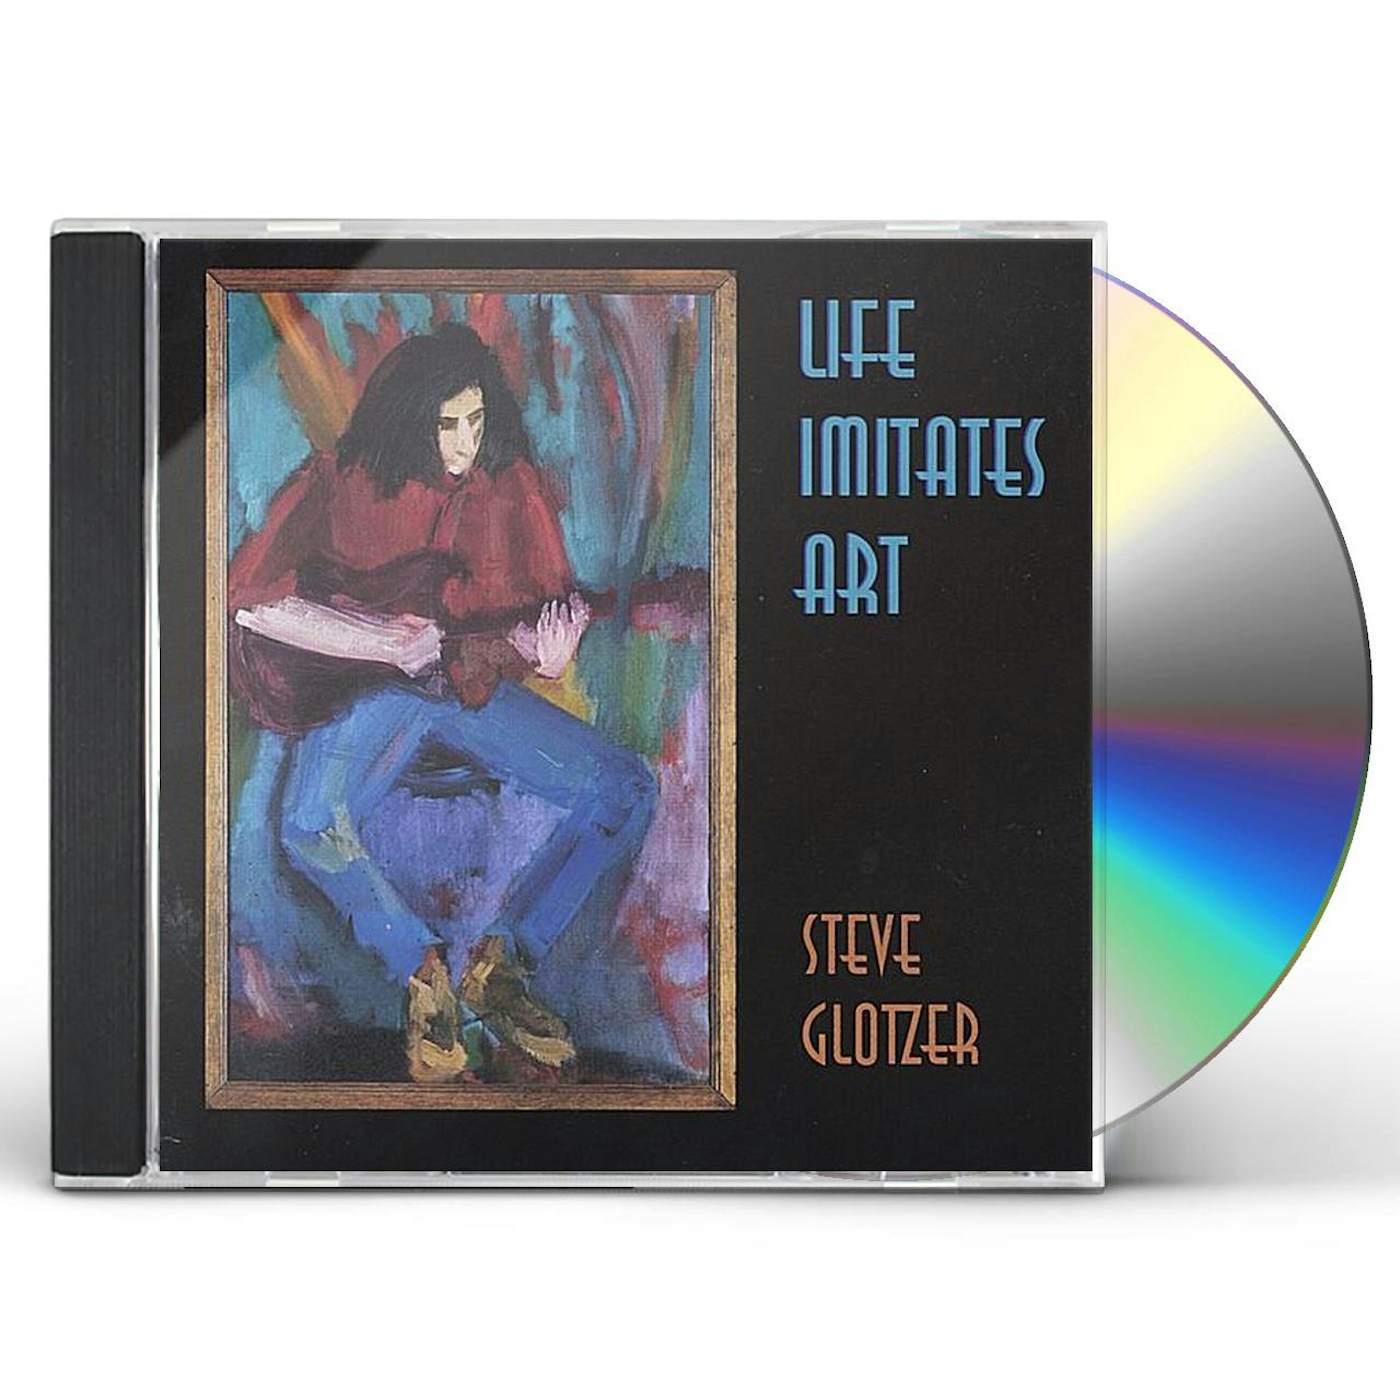 Steve Glotzer LIFE IMITATES ART CD